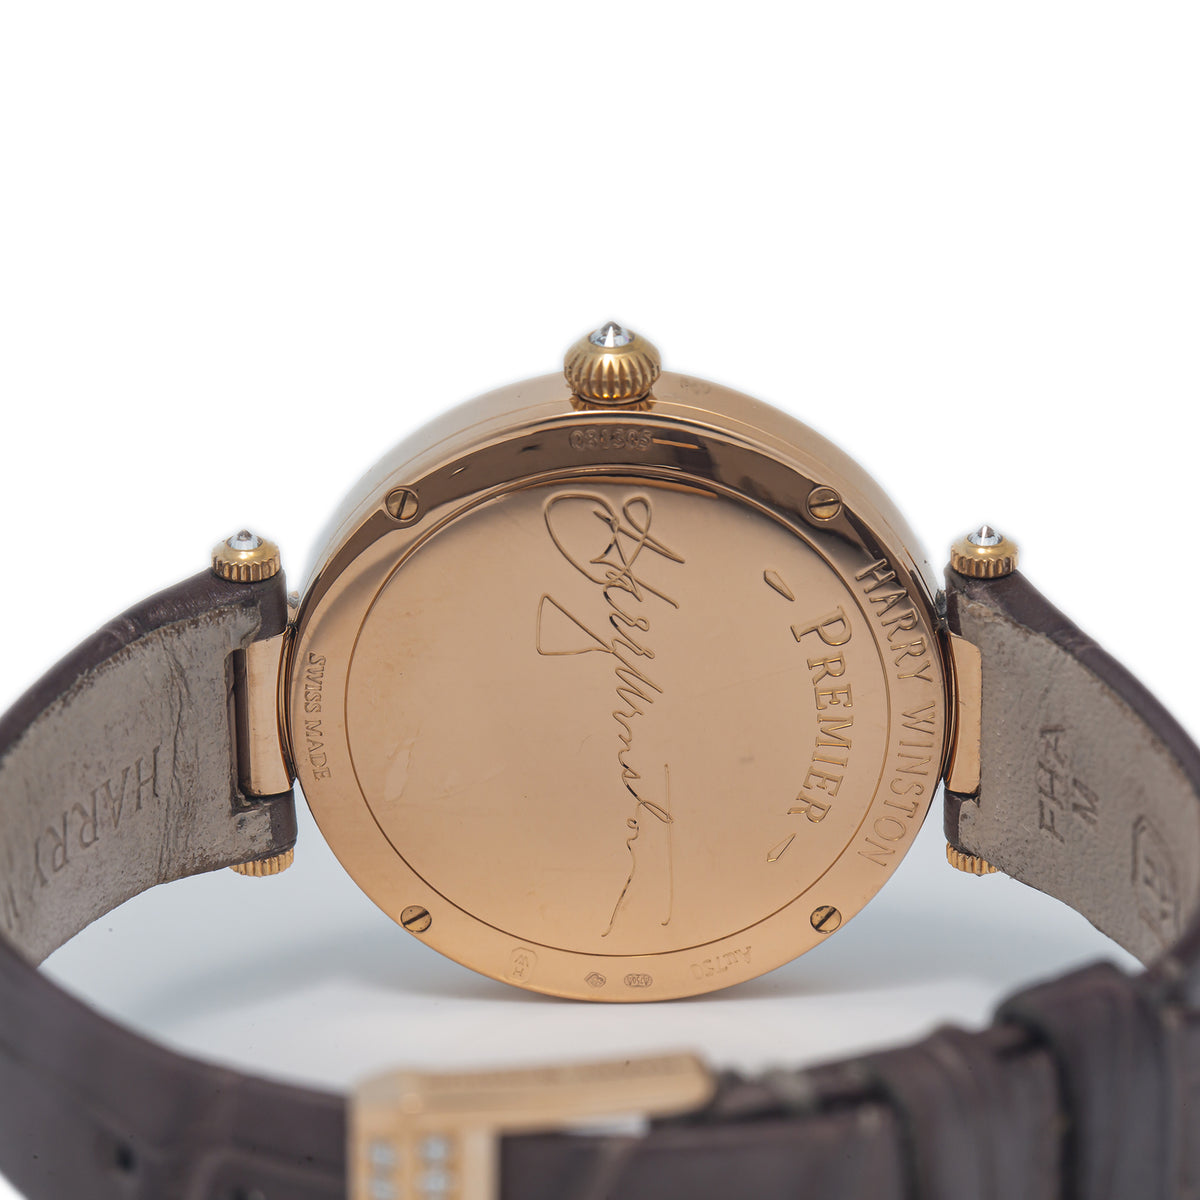 Harry Winston Premier PRNQHM31RR003 18k Rose Gold MOP Dial Quartz Watch 31mm